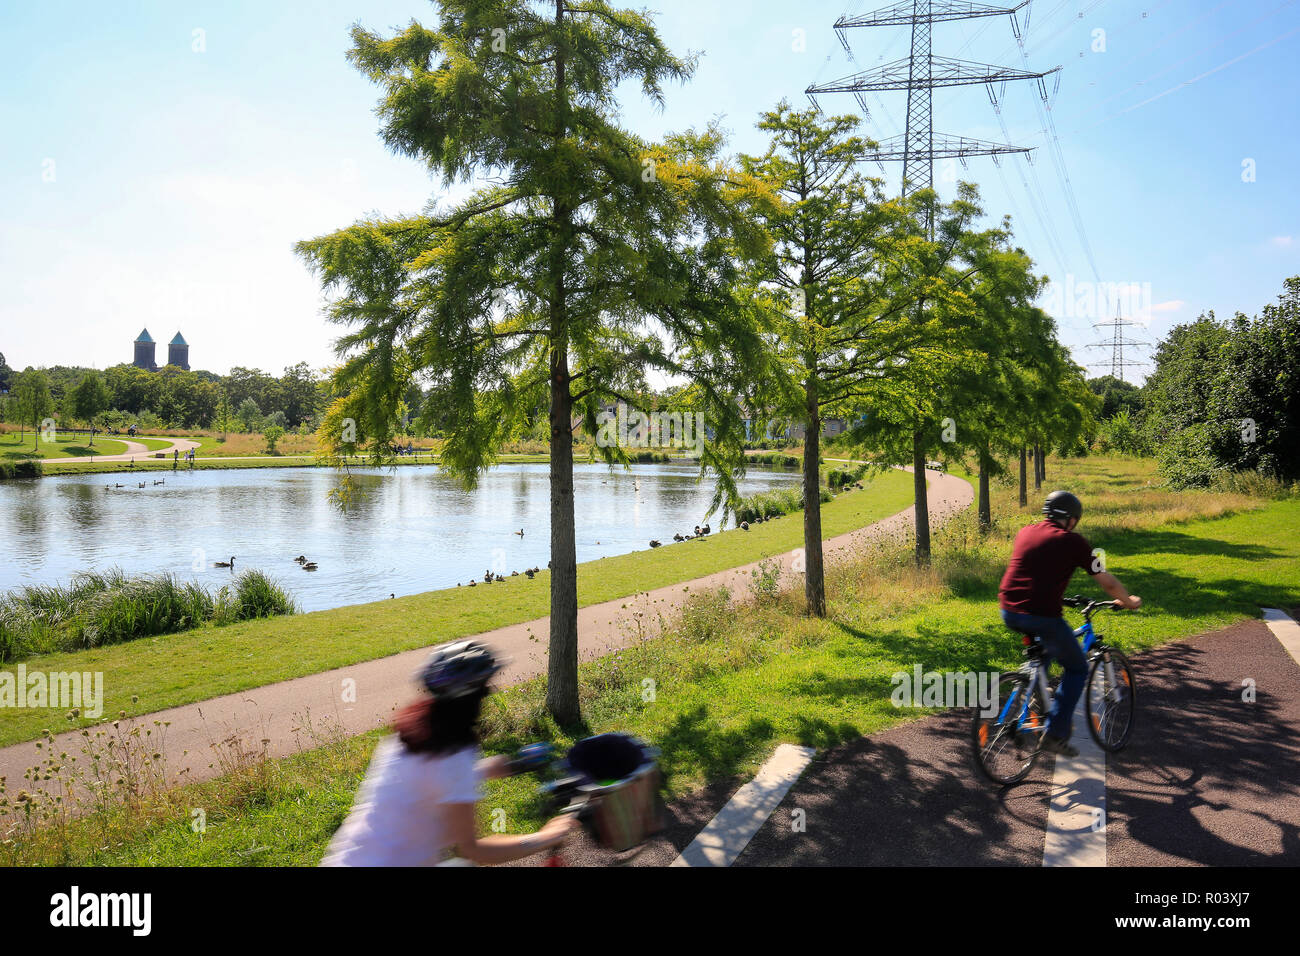 Essen, Ruhr, Allemagne, Krupp-Park, lac, Ruhr Express RS 1 randonnée à vélo, projet de développement urbain de Krupp-Guertel Banque D'Images